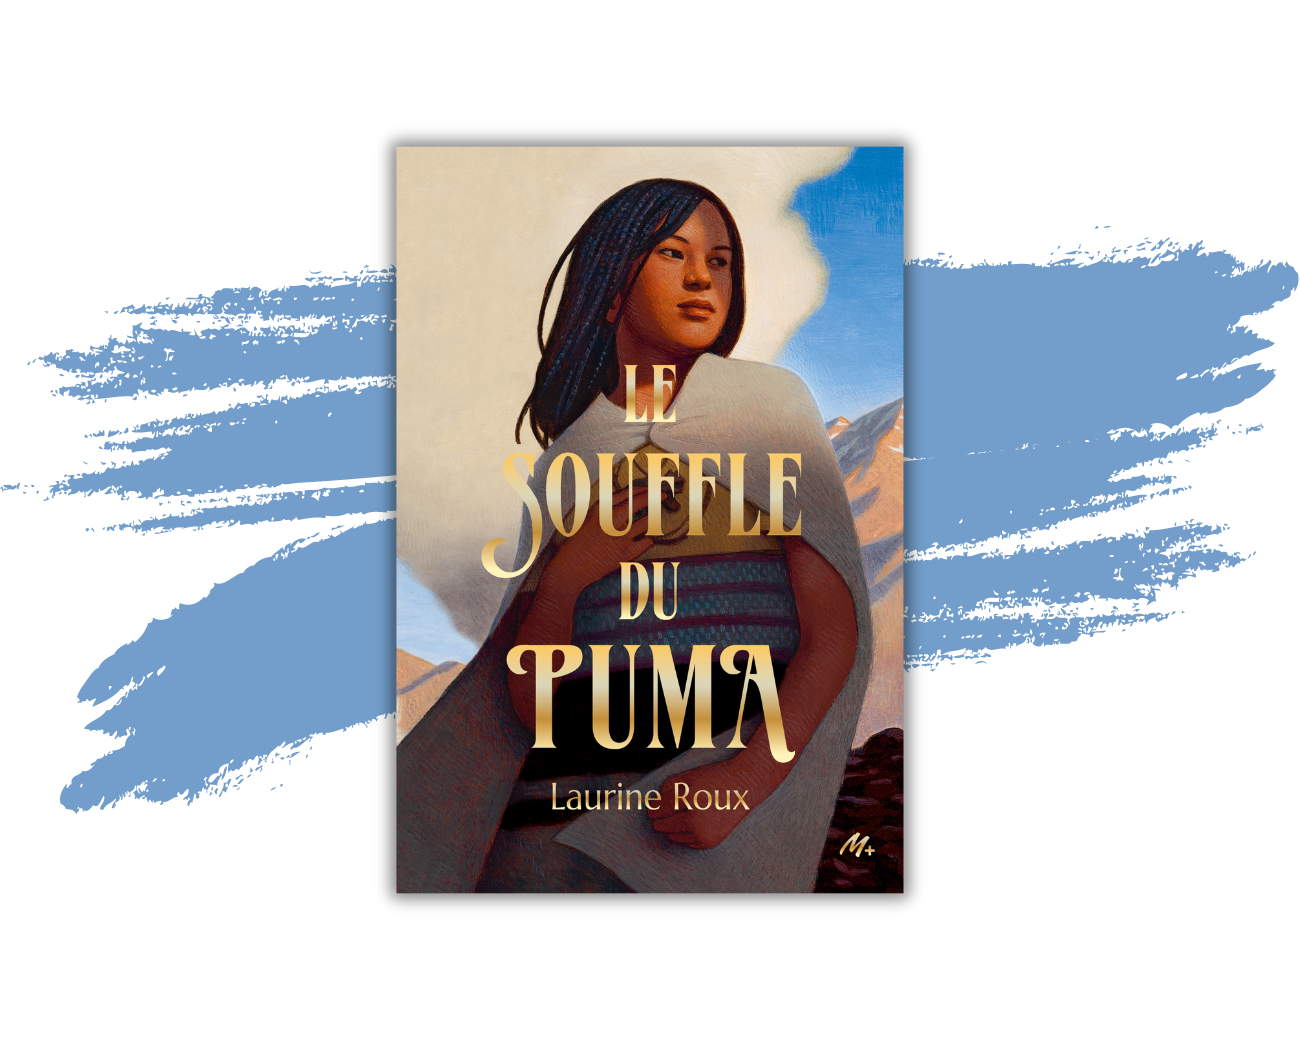 Le livre "Le souffle du puma" de Laurine Roux.